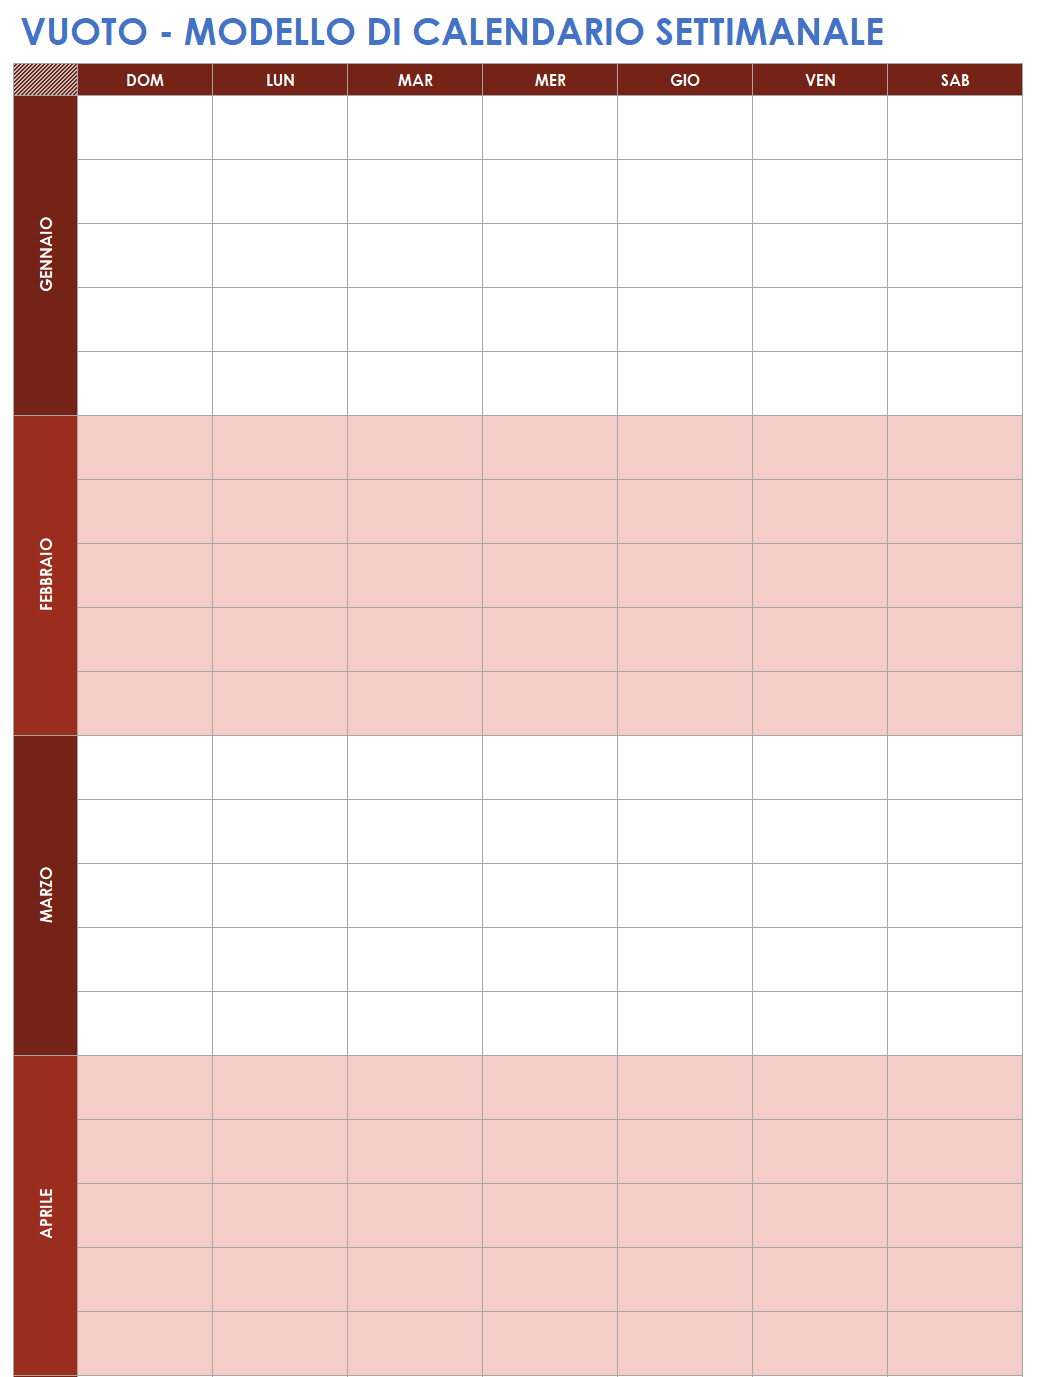 Calendario settimanale vuoto di pianificazione personale di lavoro